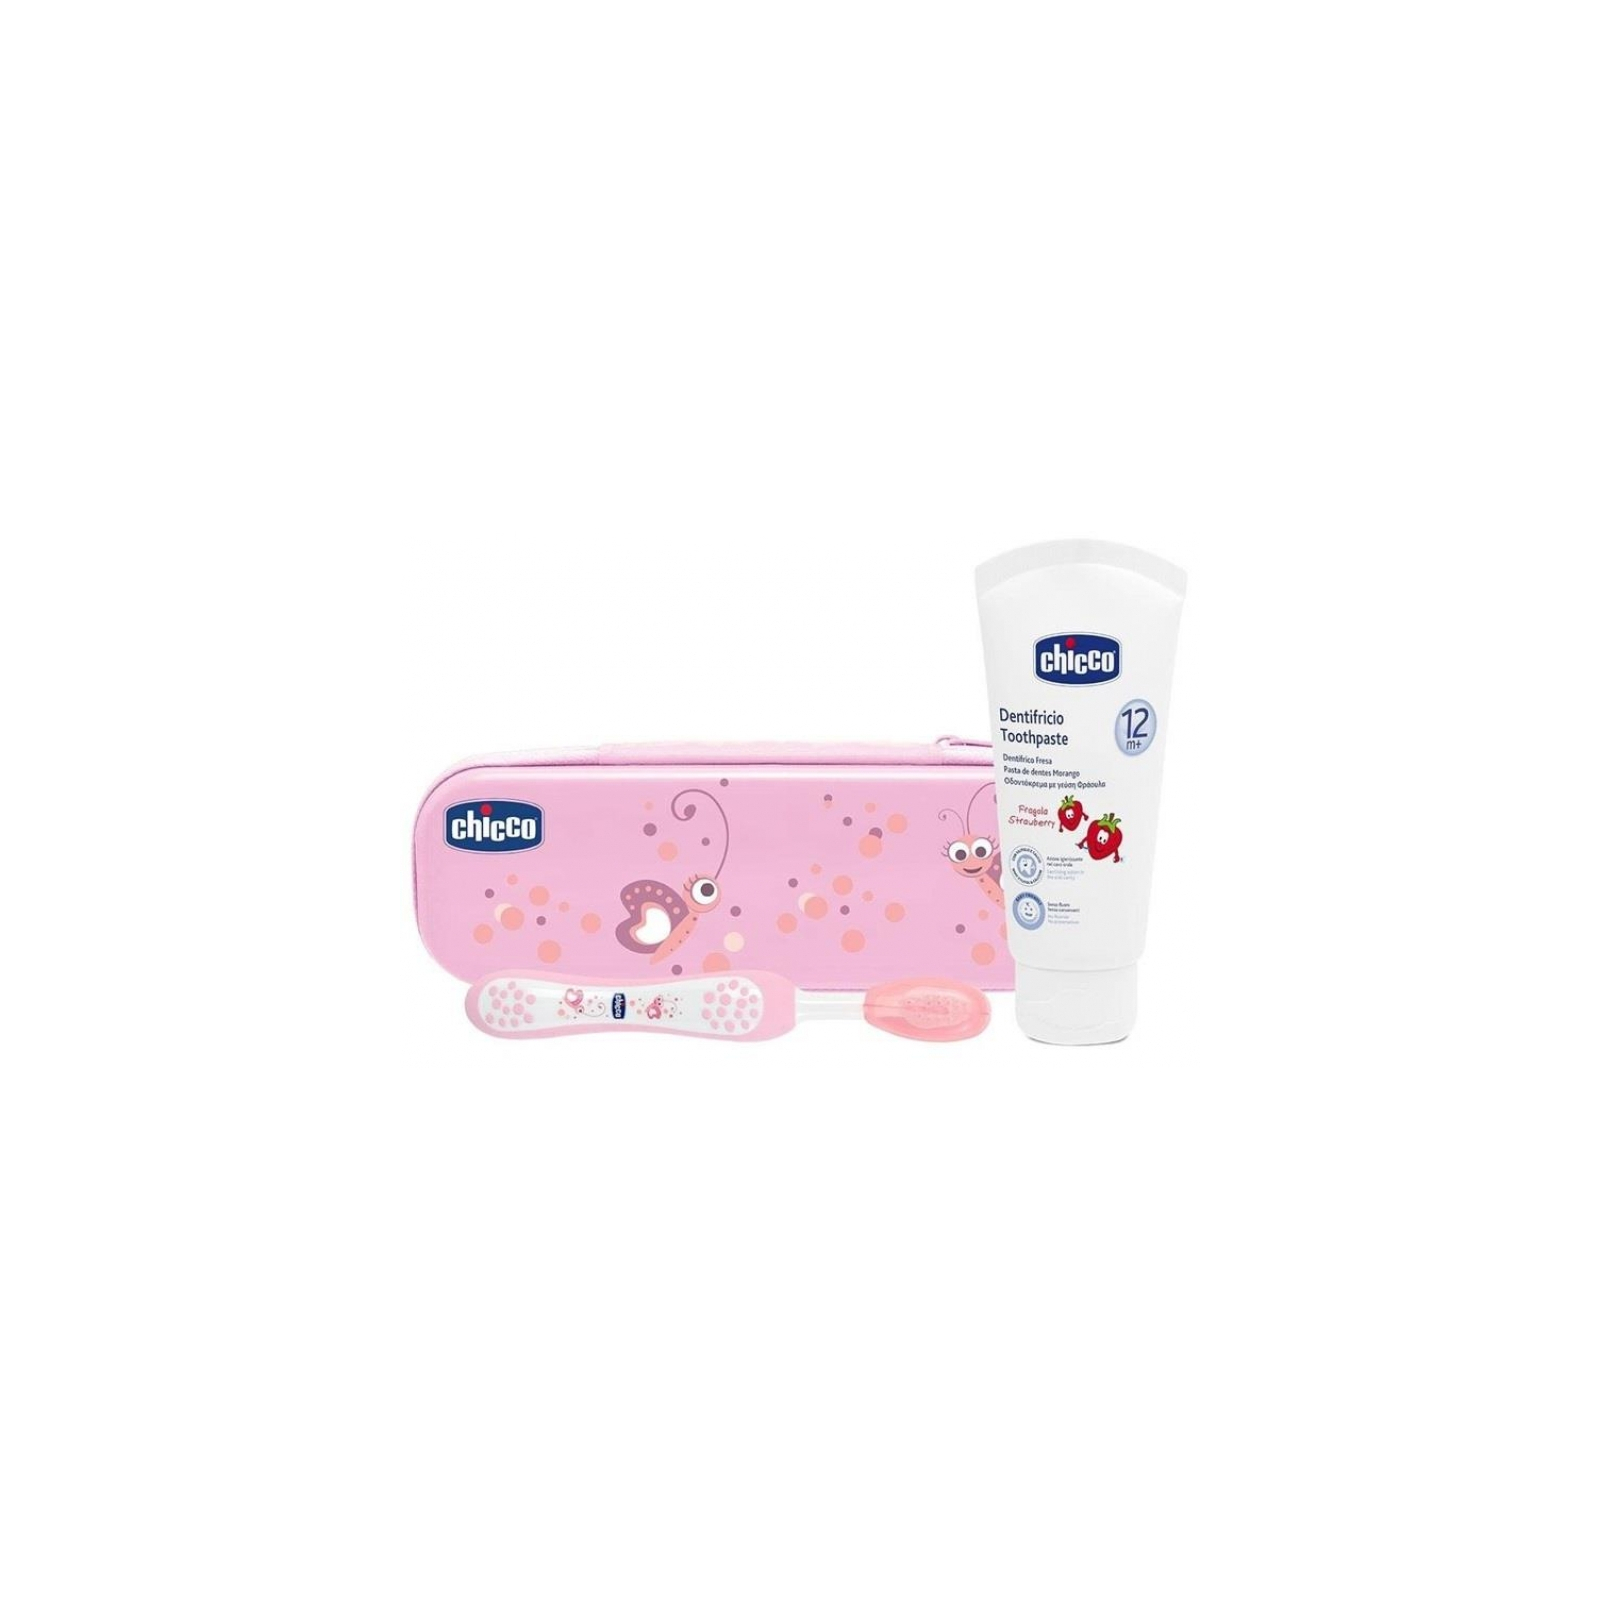 Детская зубная щетка Chicco щетка + паста розовый (06959.10) изображение 2